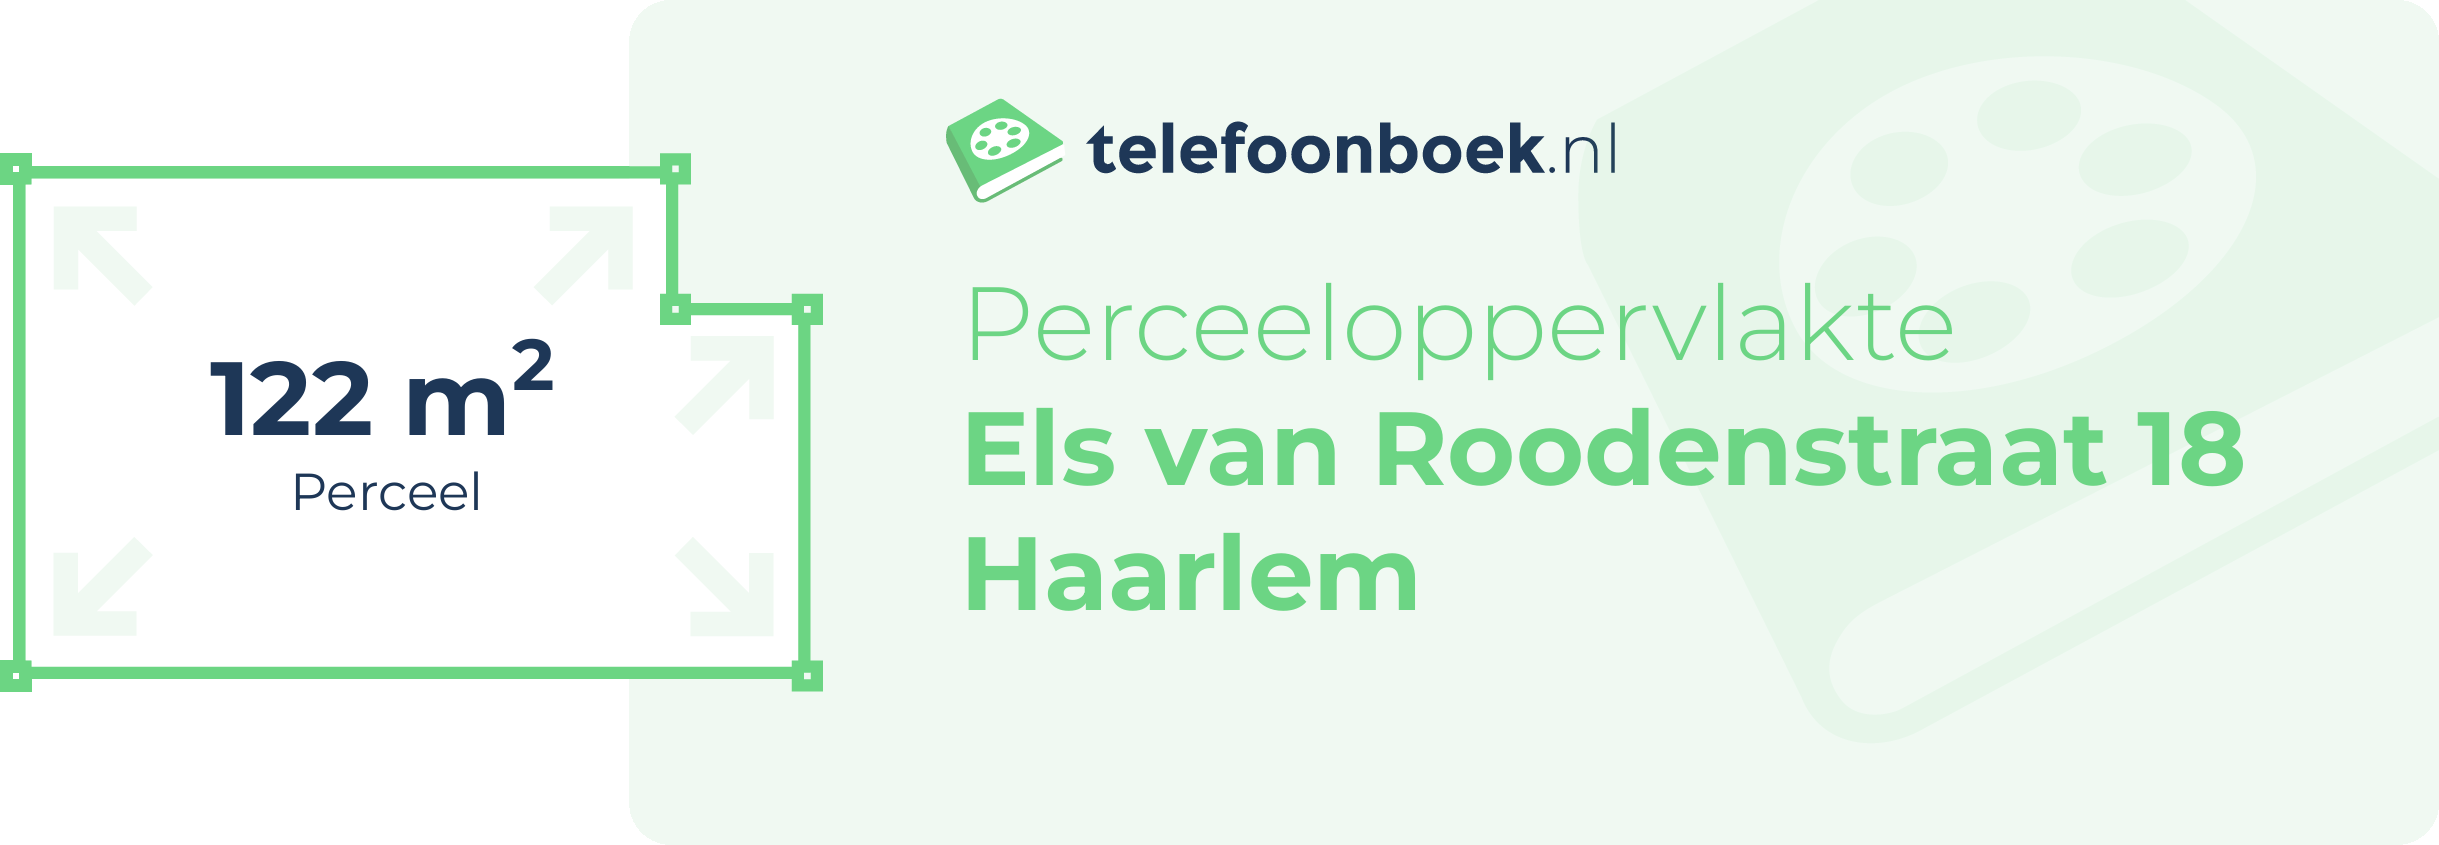 Perceeloppervlakte Els Van Roodenstraat 18 Haarlem